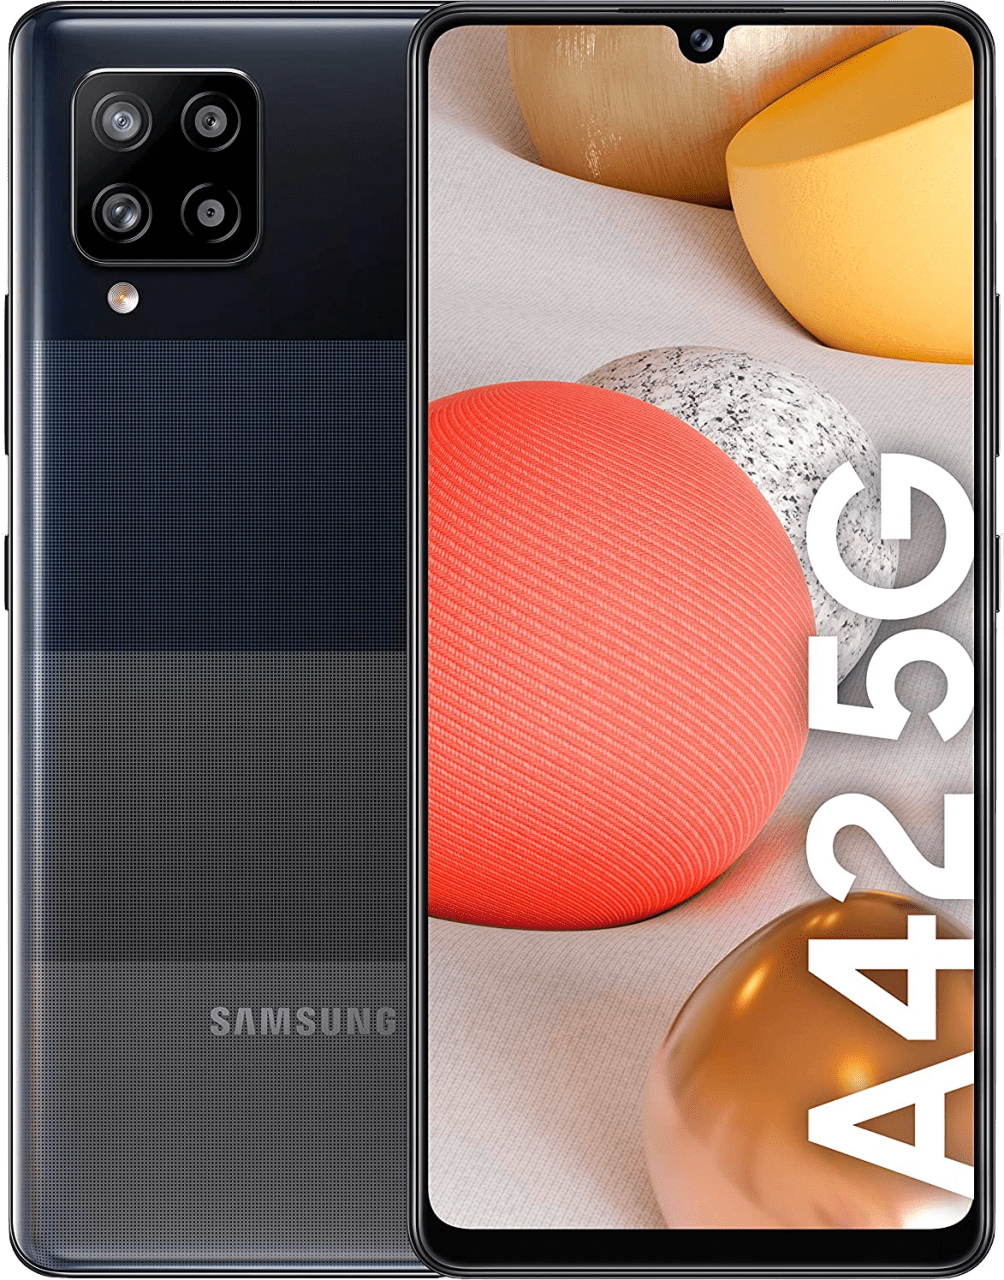 Schwarz Samsung Galaxy A42 Smartphone - 128GB - Dual Sim.1